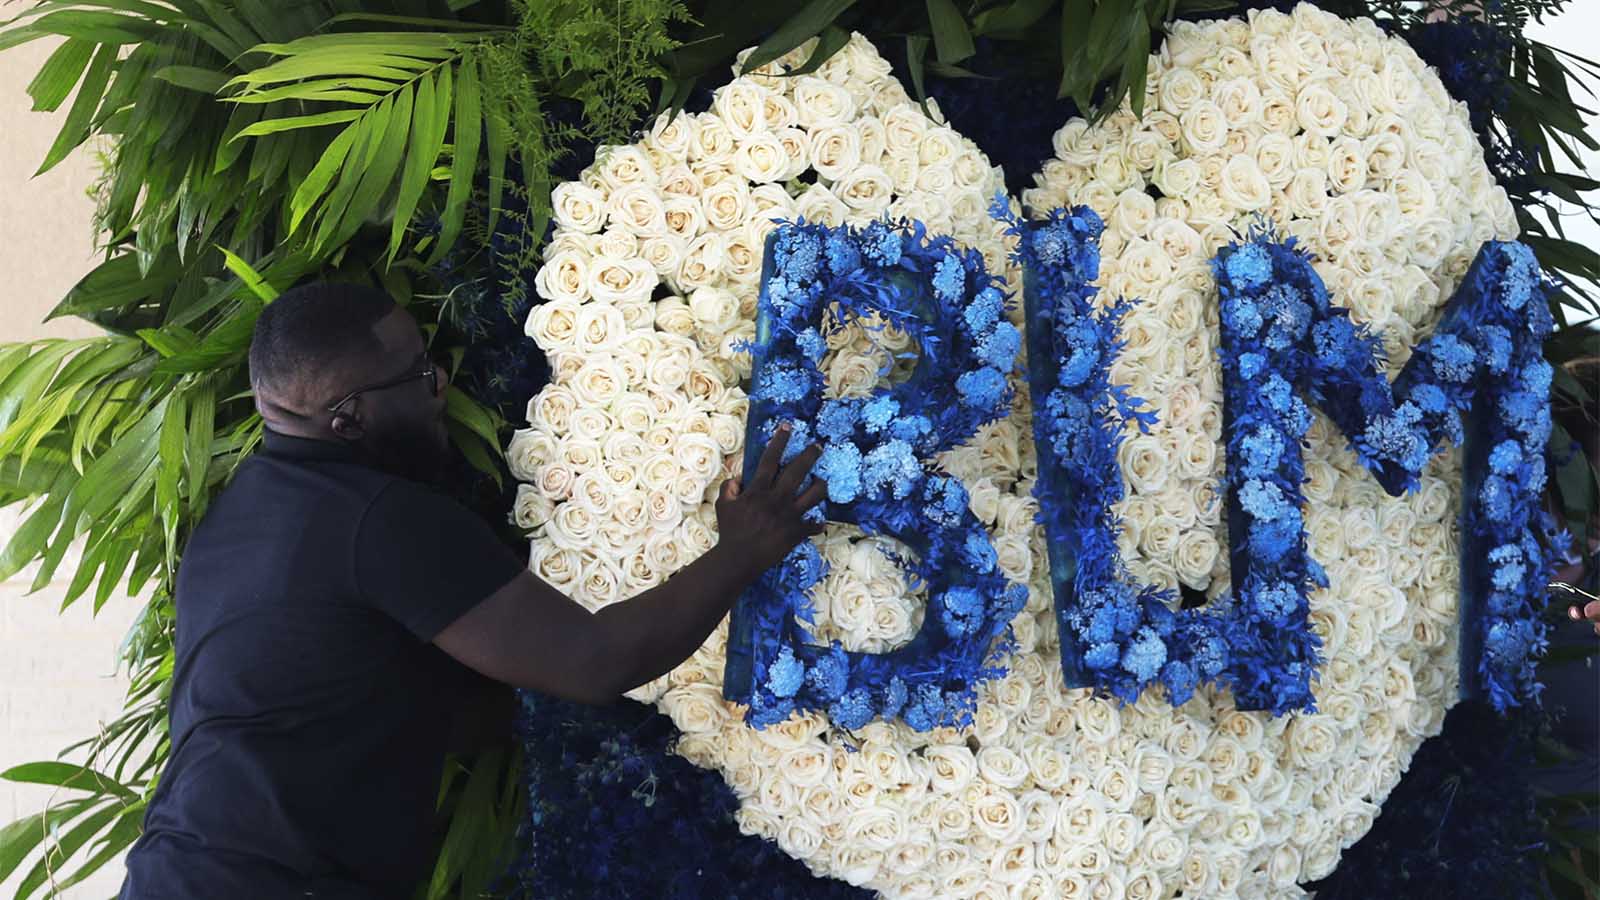 סידור הפרחים בטקס האשכבה של ג'ורג' פלויד &#8211; BLM ראשי התיבות של ססמת המחאה black lives matter (צילום: AP Photo/Eric Gay)